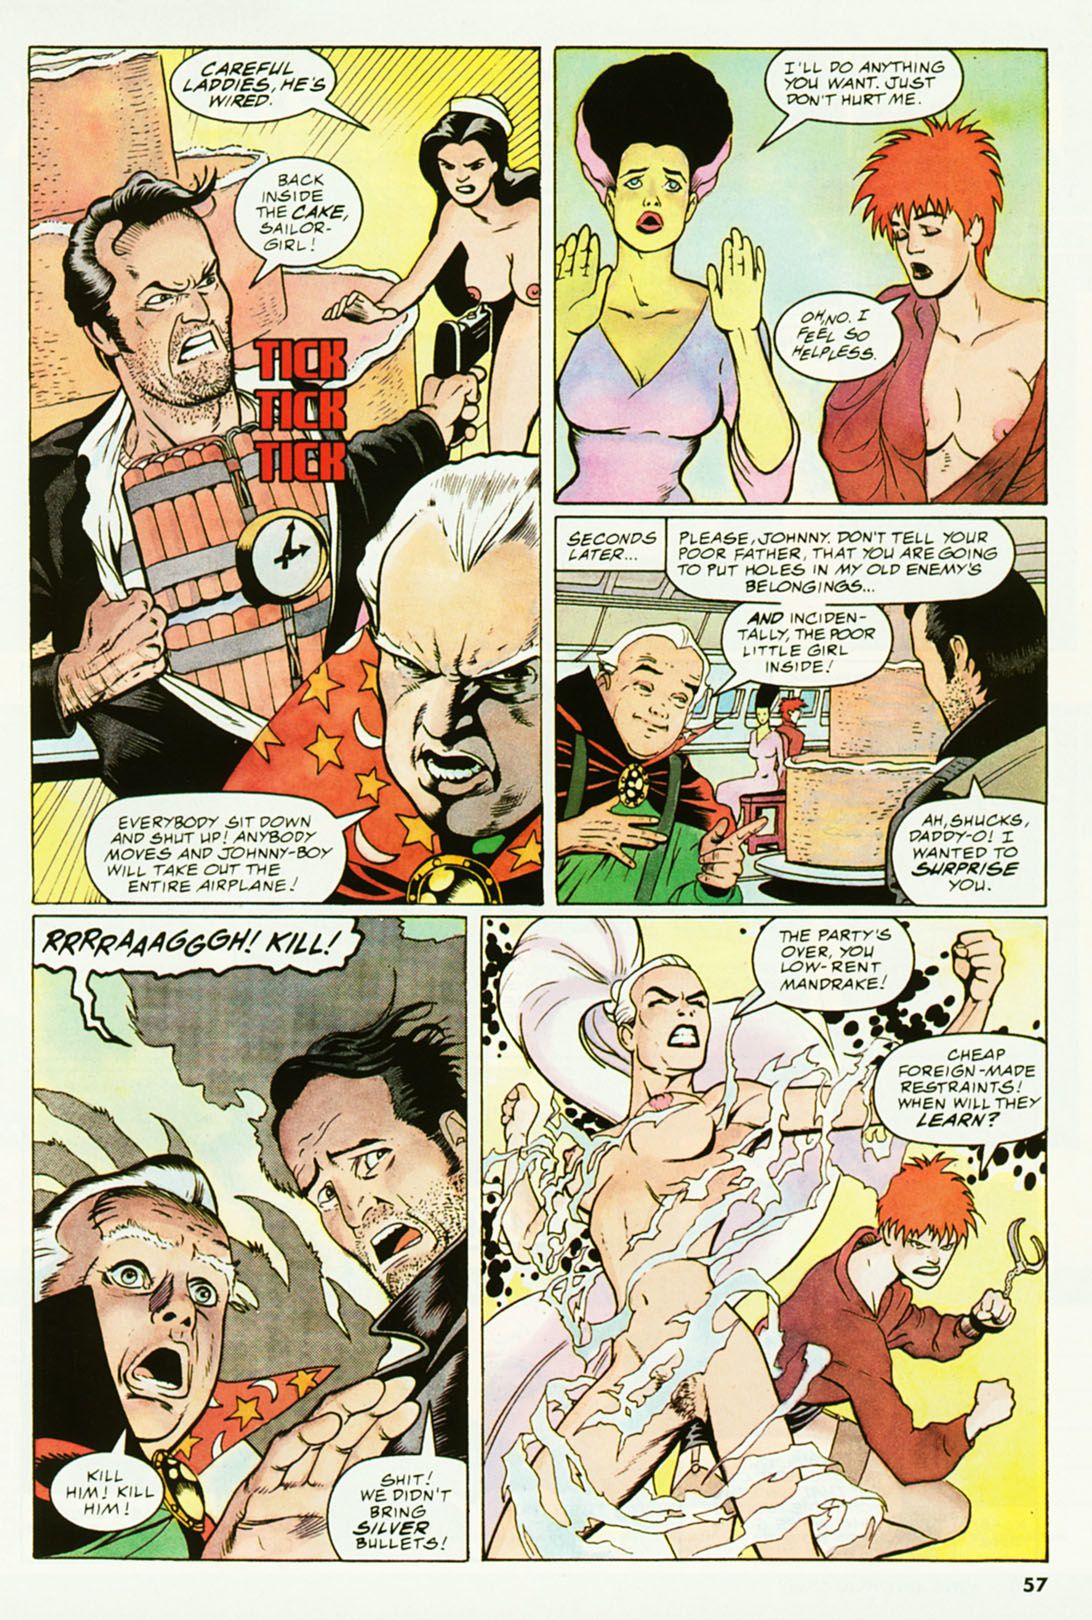 penthouse męskie przygody komiks #3 część 3